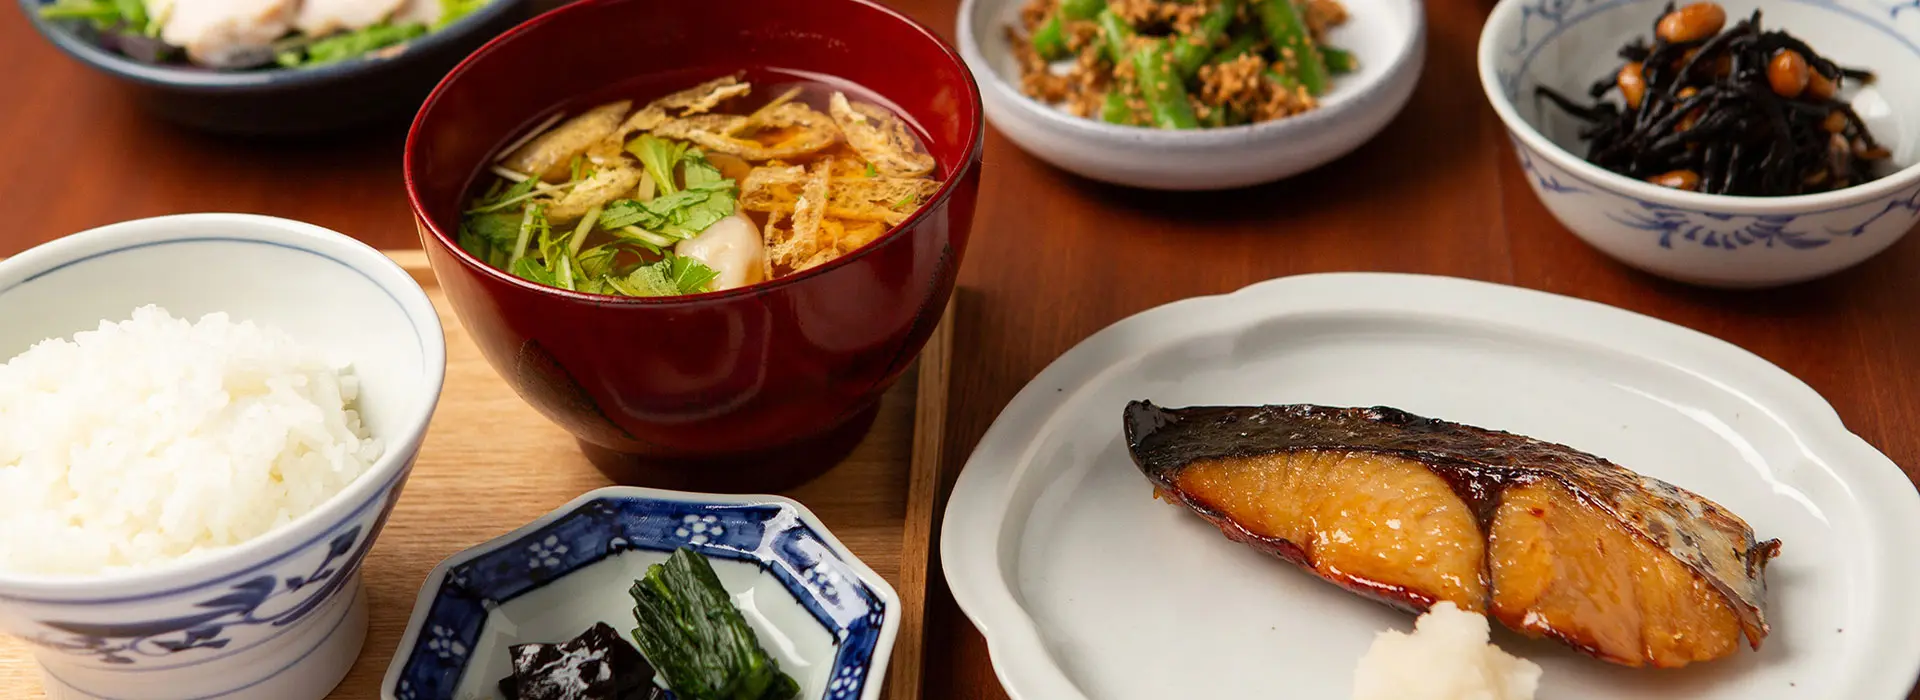 於輕井澤、東京、新加坡皆有分店的信州美食餐廳「酢重餐廳」